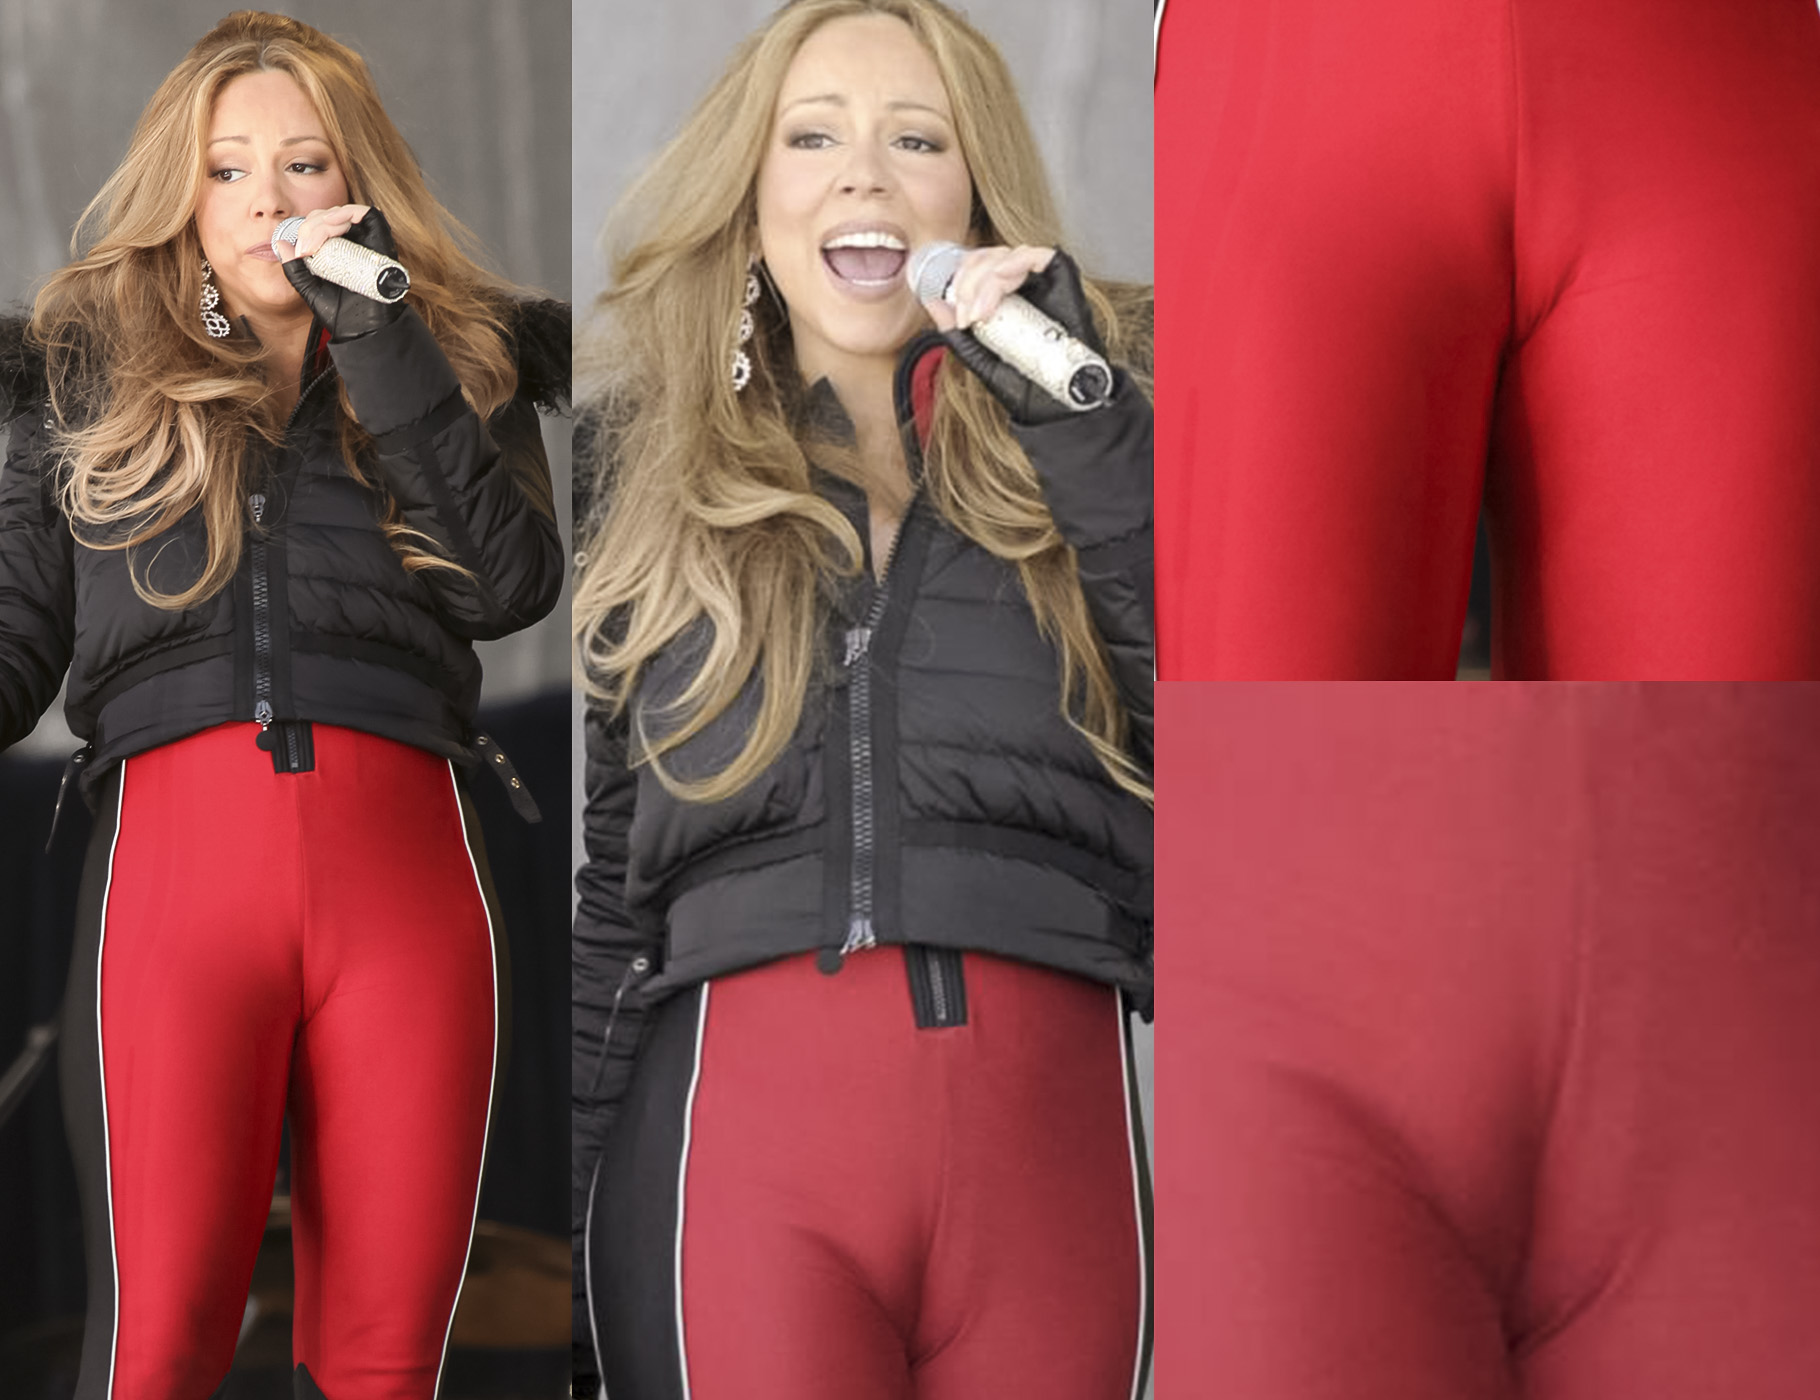 Mariah Carey camel toe - Mariah Carey cameltoe - Mariah Carey sexy | ...